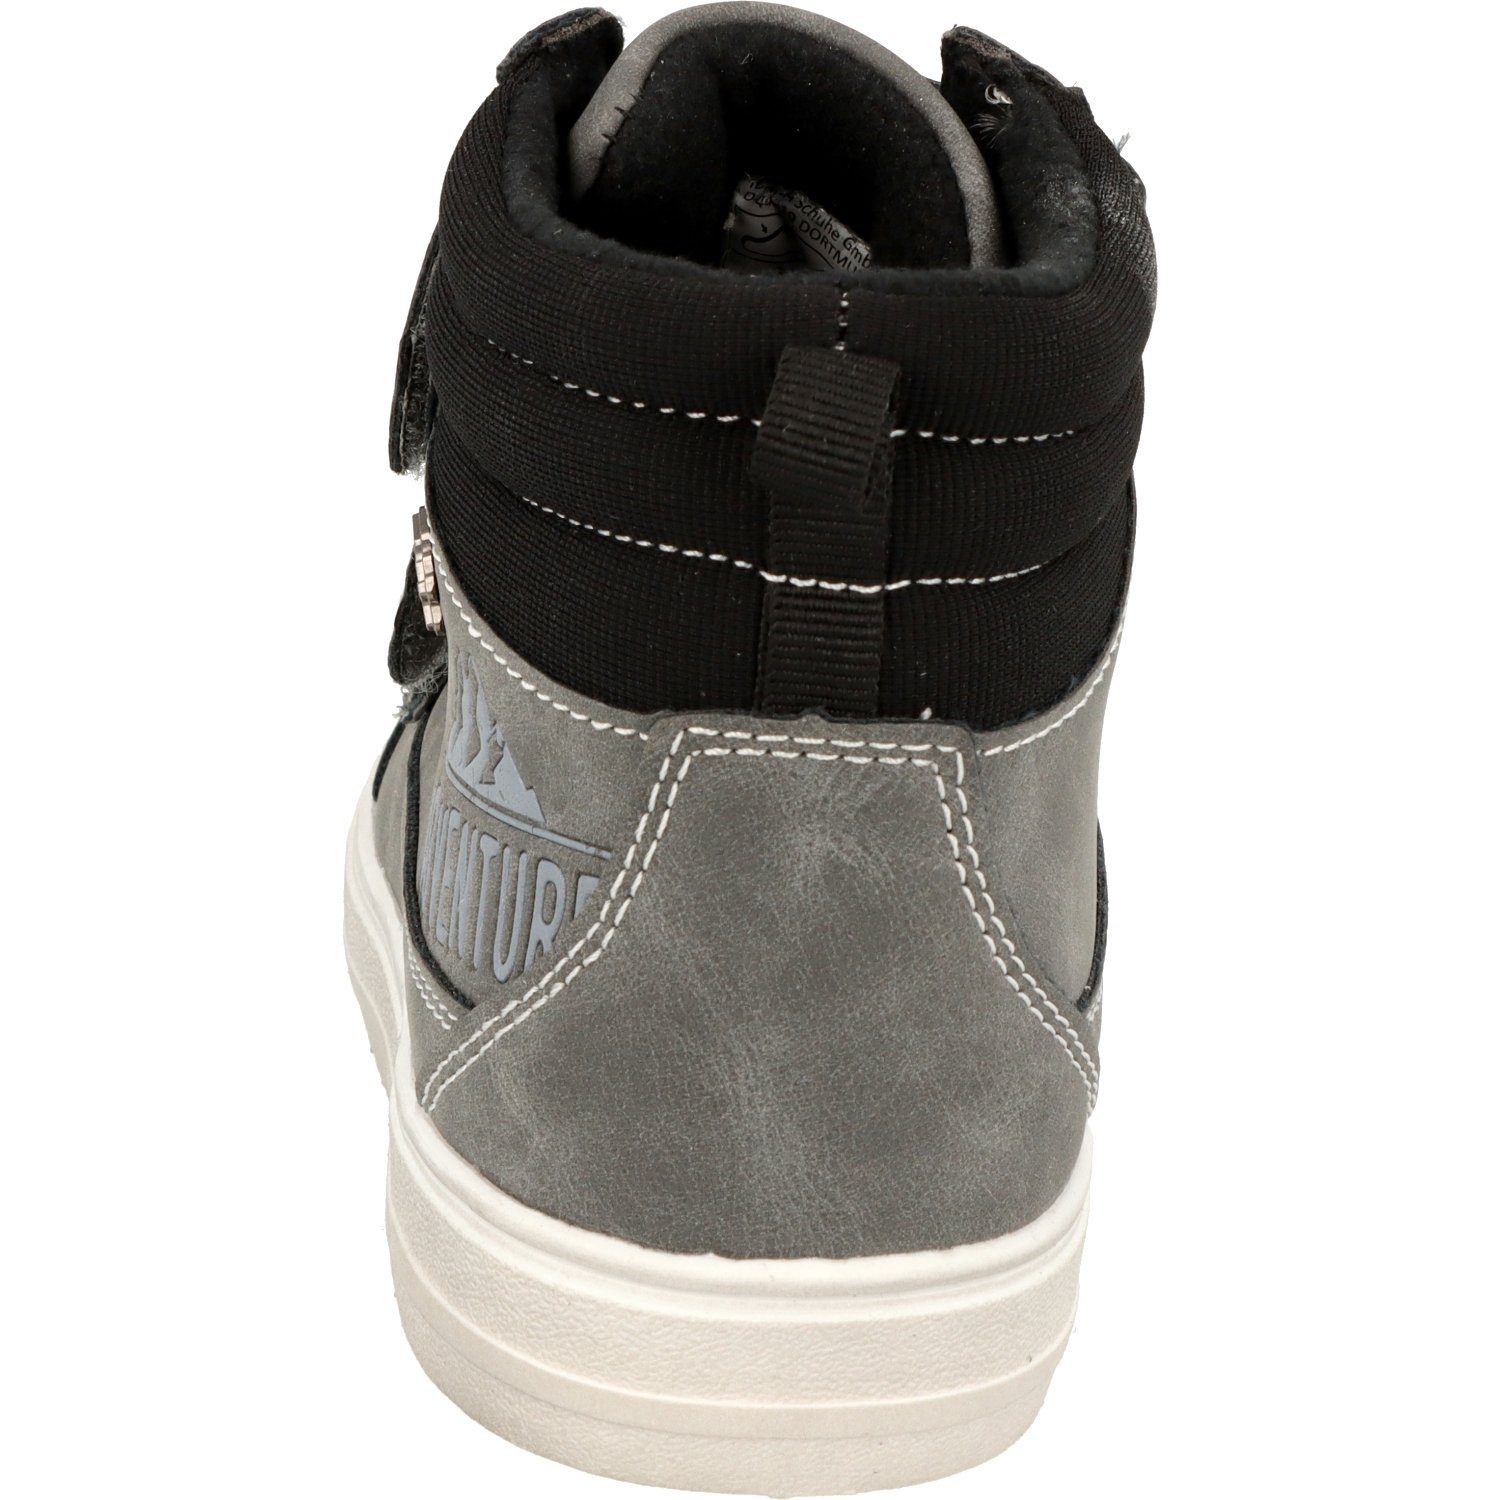 Indigo Jungen Hi-Top Schuhe 453-028 Schnürschuh Wasserabweisend Klettverschluss, Tex Dk.Grey